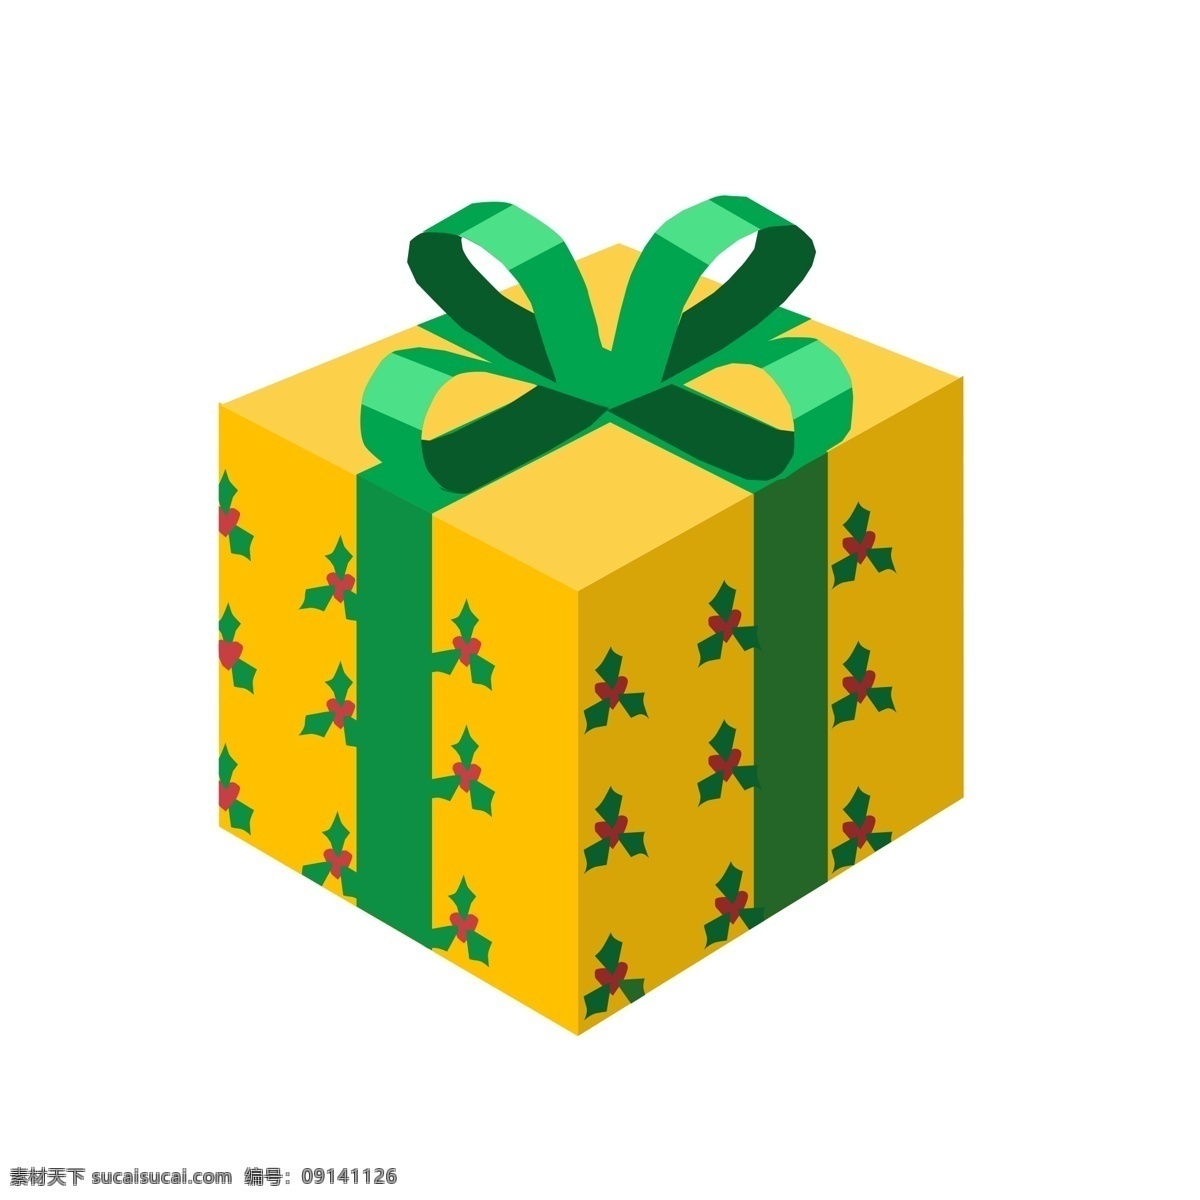 卡通 手绘 黄色 礼盒 插画 盒子 绿色丝带 蝴蝶结 正方形 送礼 贺礼 祝贺 礼品 包装 心意 祝福